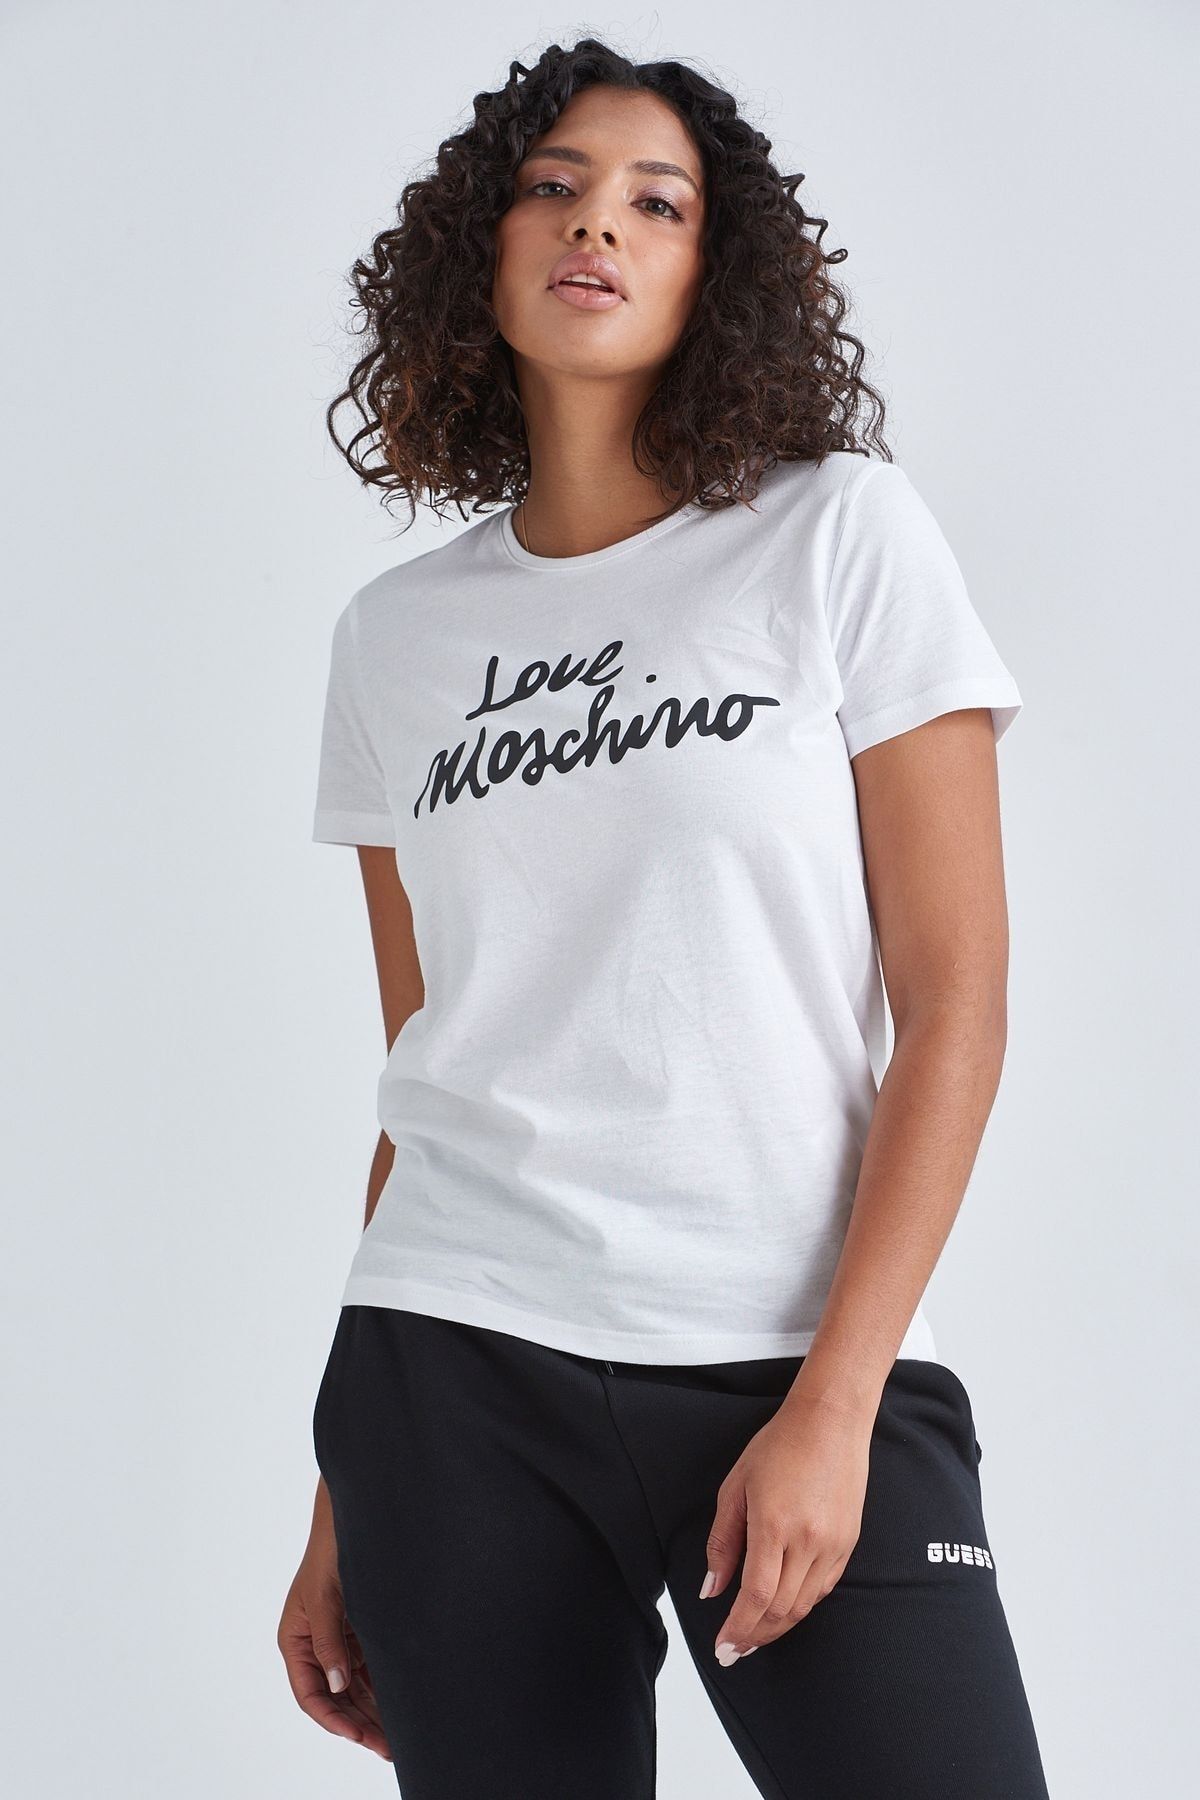 Moschino Yazılı Kadın T-shirt